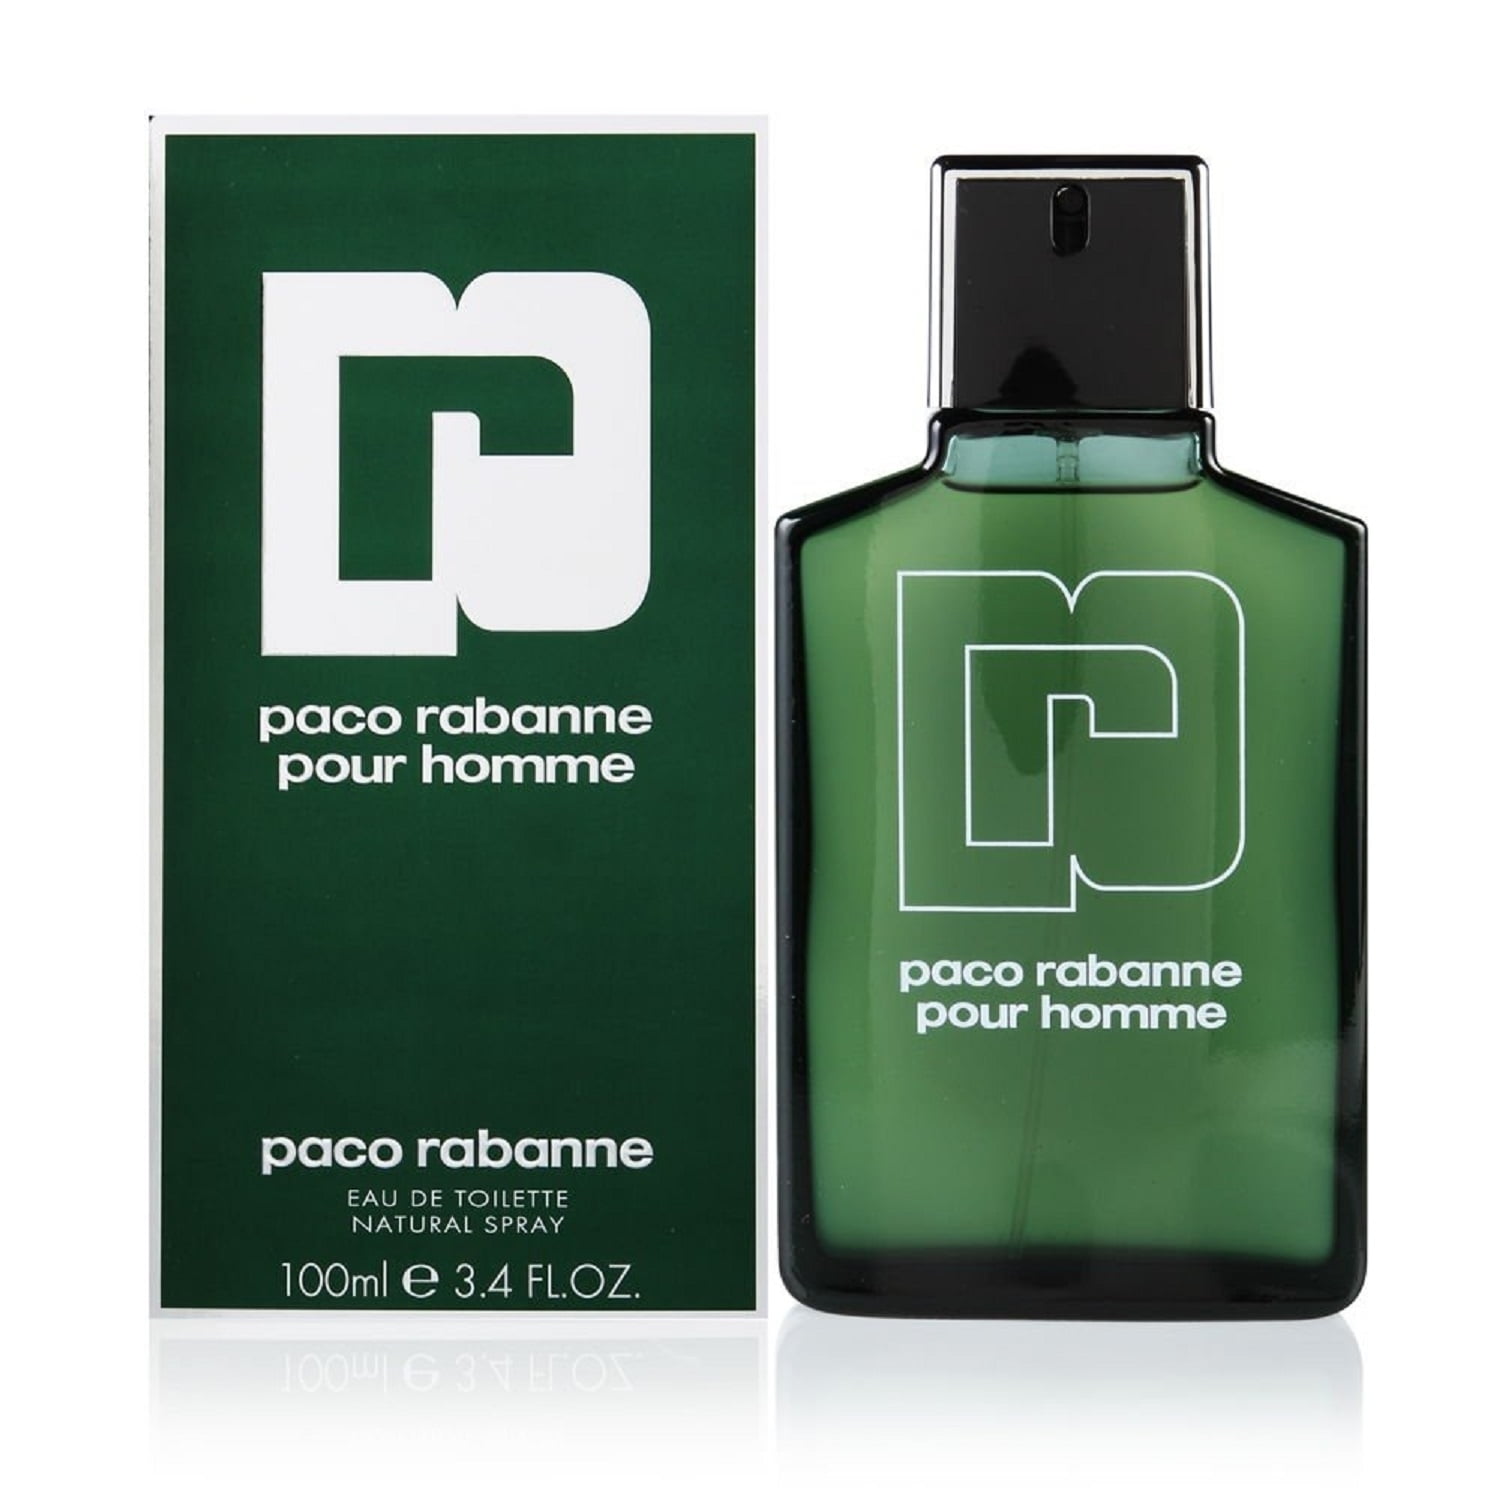 Paco Rabanne Pour Homme Eau de Toilette, Cologne for Men, 3.4 oz ...